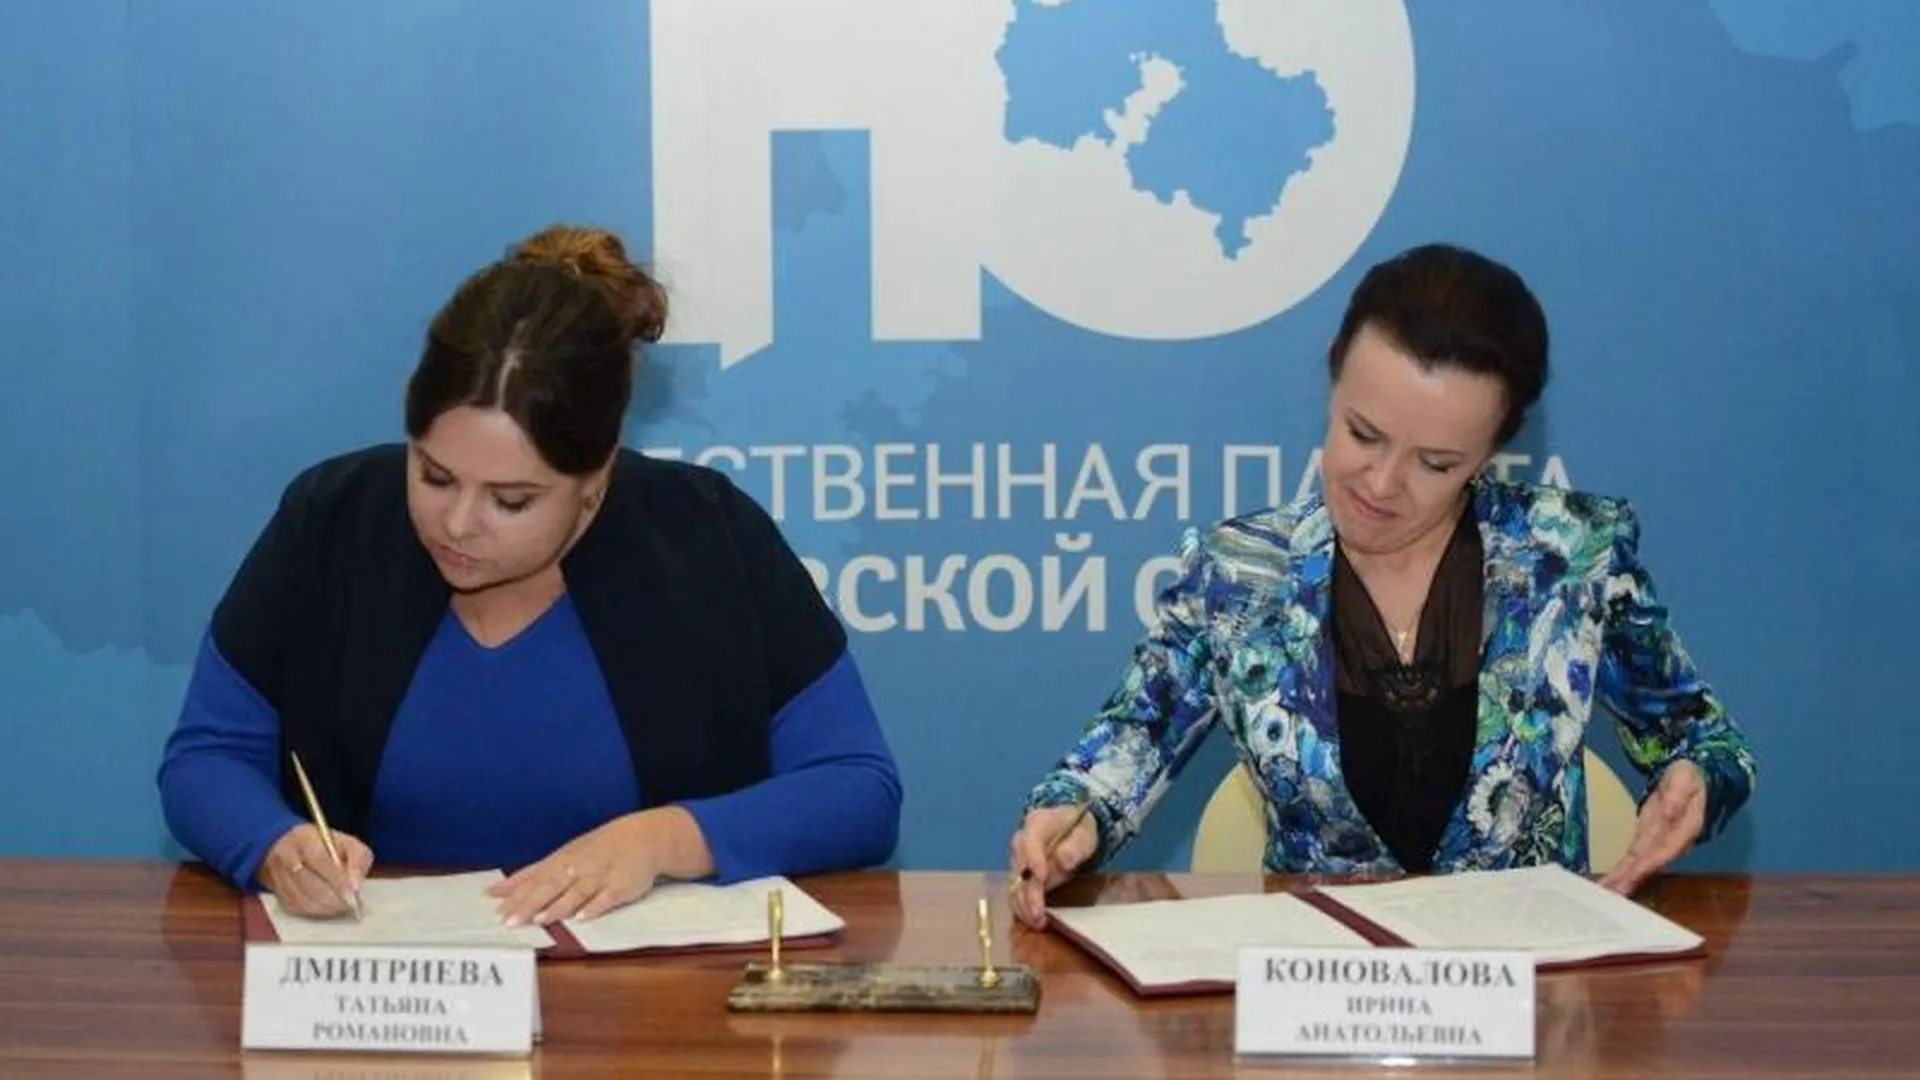 Мособлизбирком и Общественная палата Подмосковья подписали соглашение